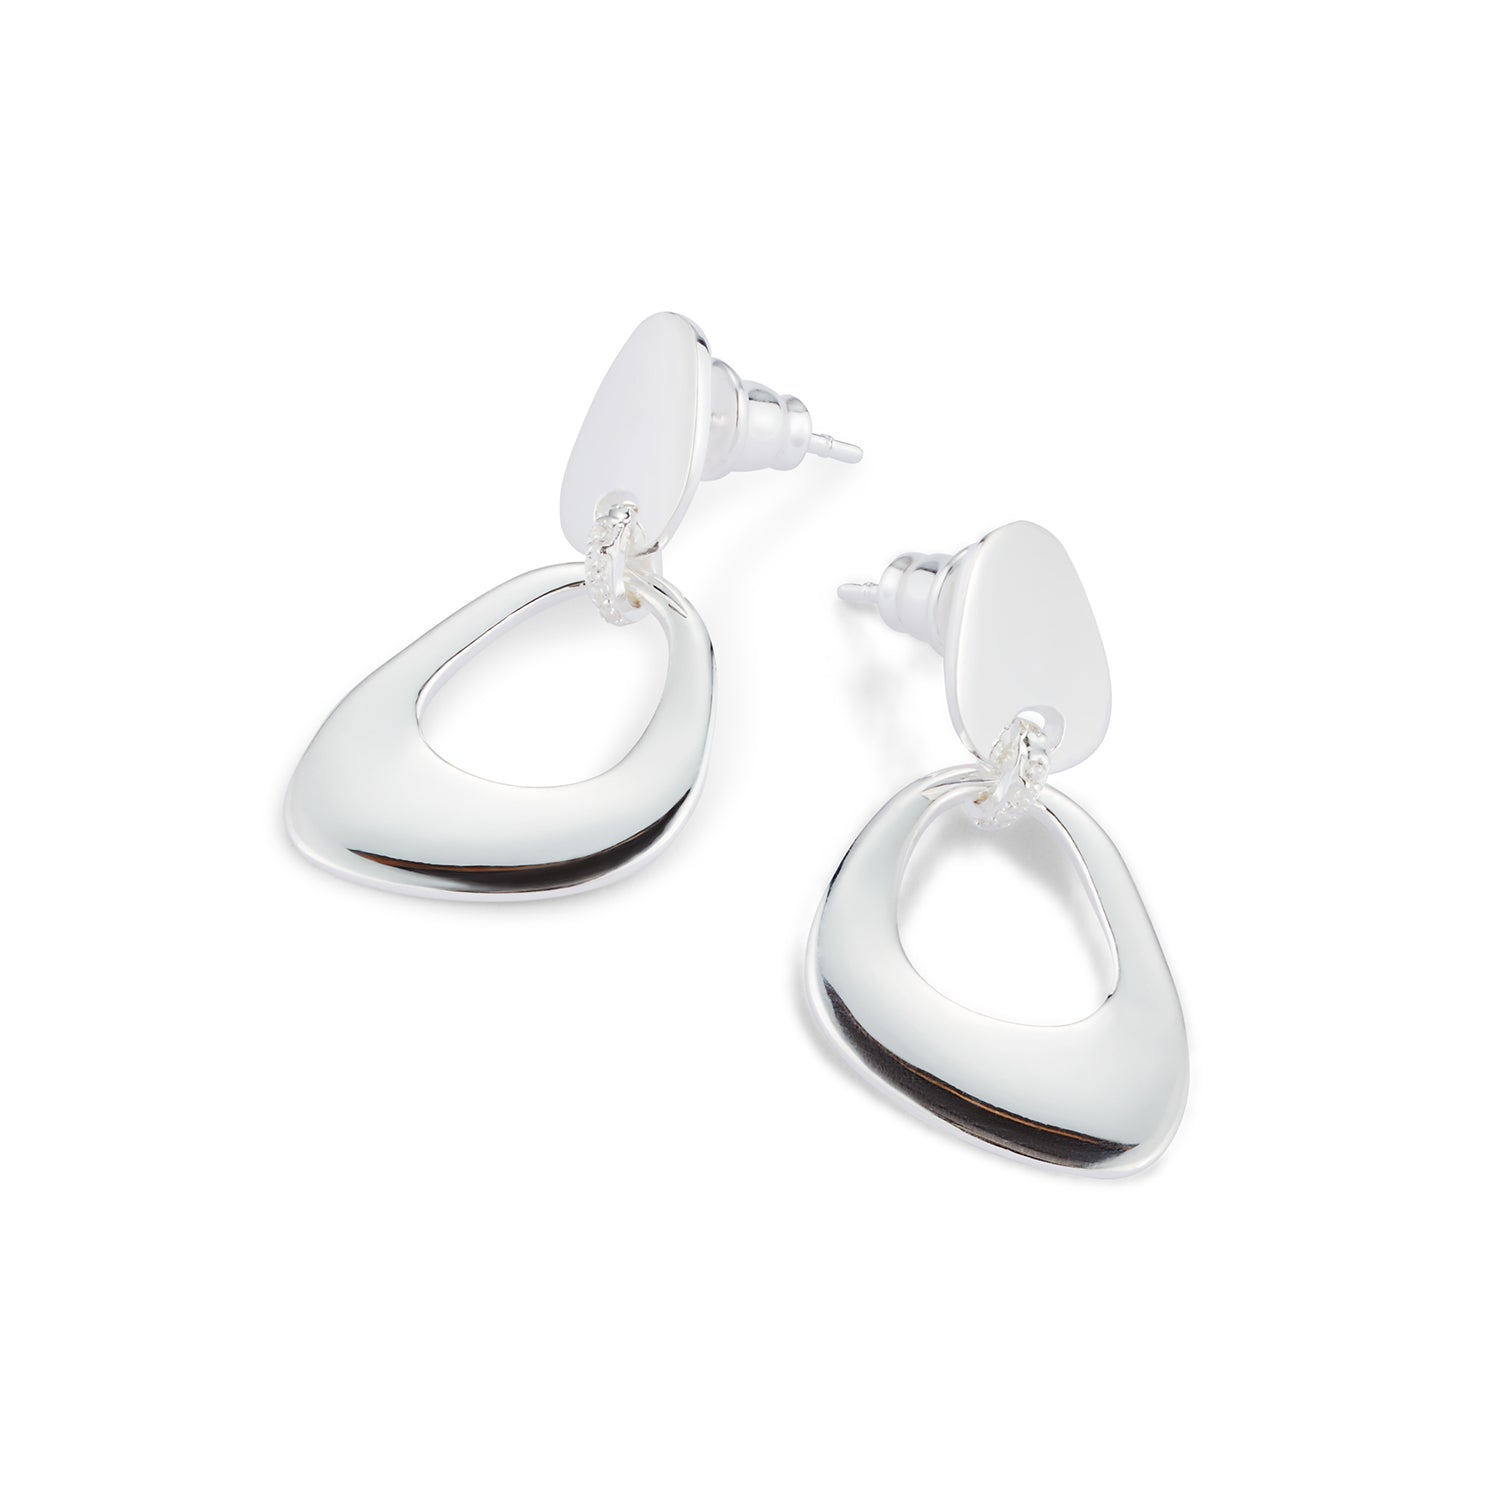 Pebble Drop Earrings - Sterling Silver